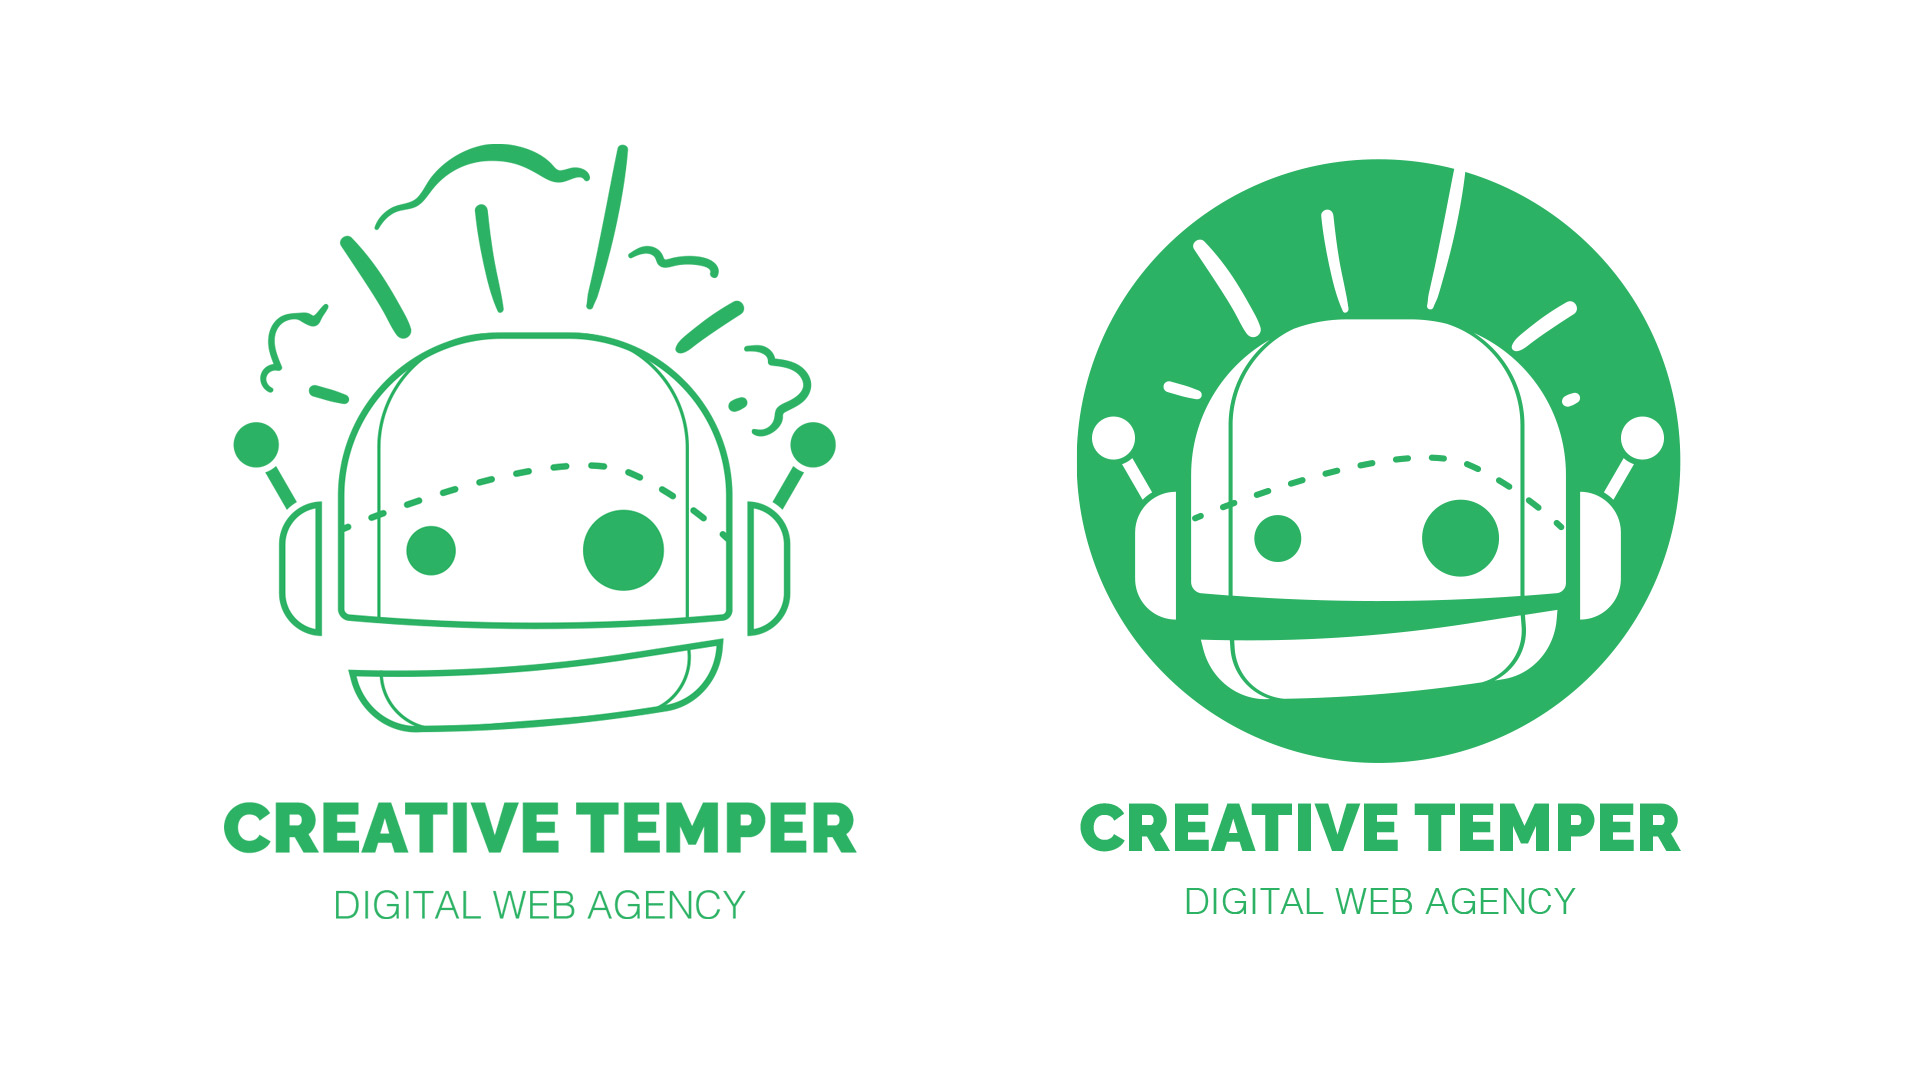 Creative Temper Logos